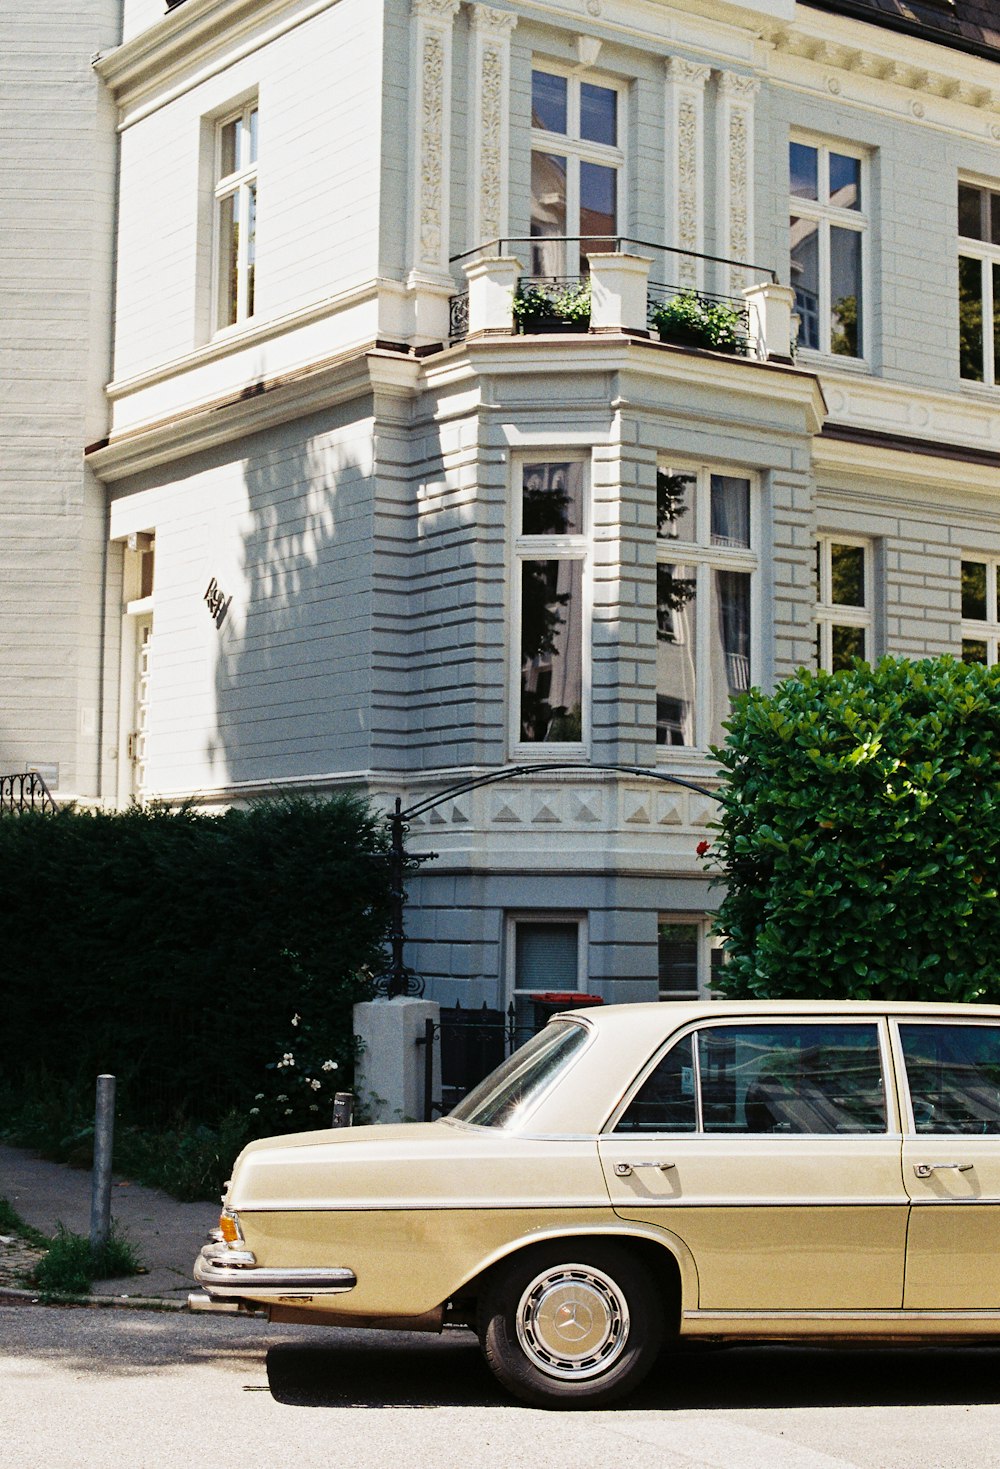 berline beige garée à côté de la maison